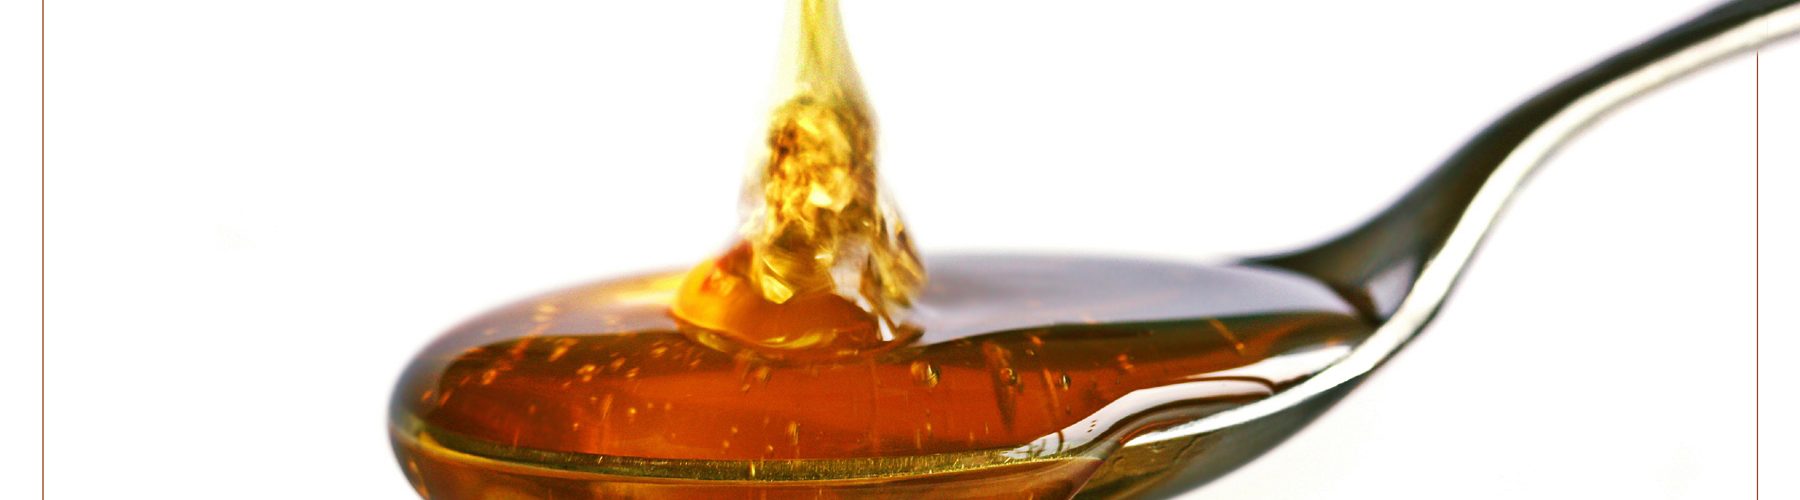 Reduziert Honig die Nebenwirkungen bei der Krebstherapie